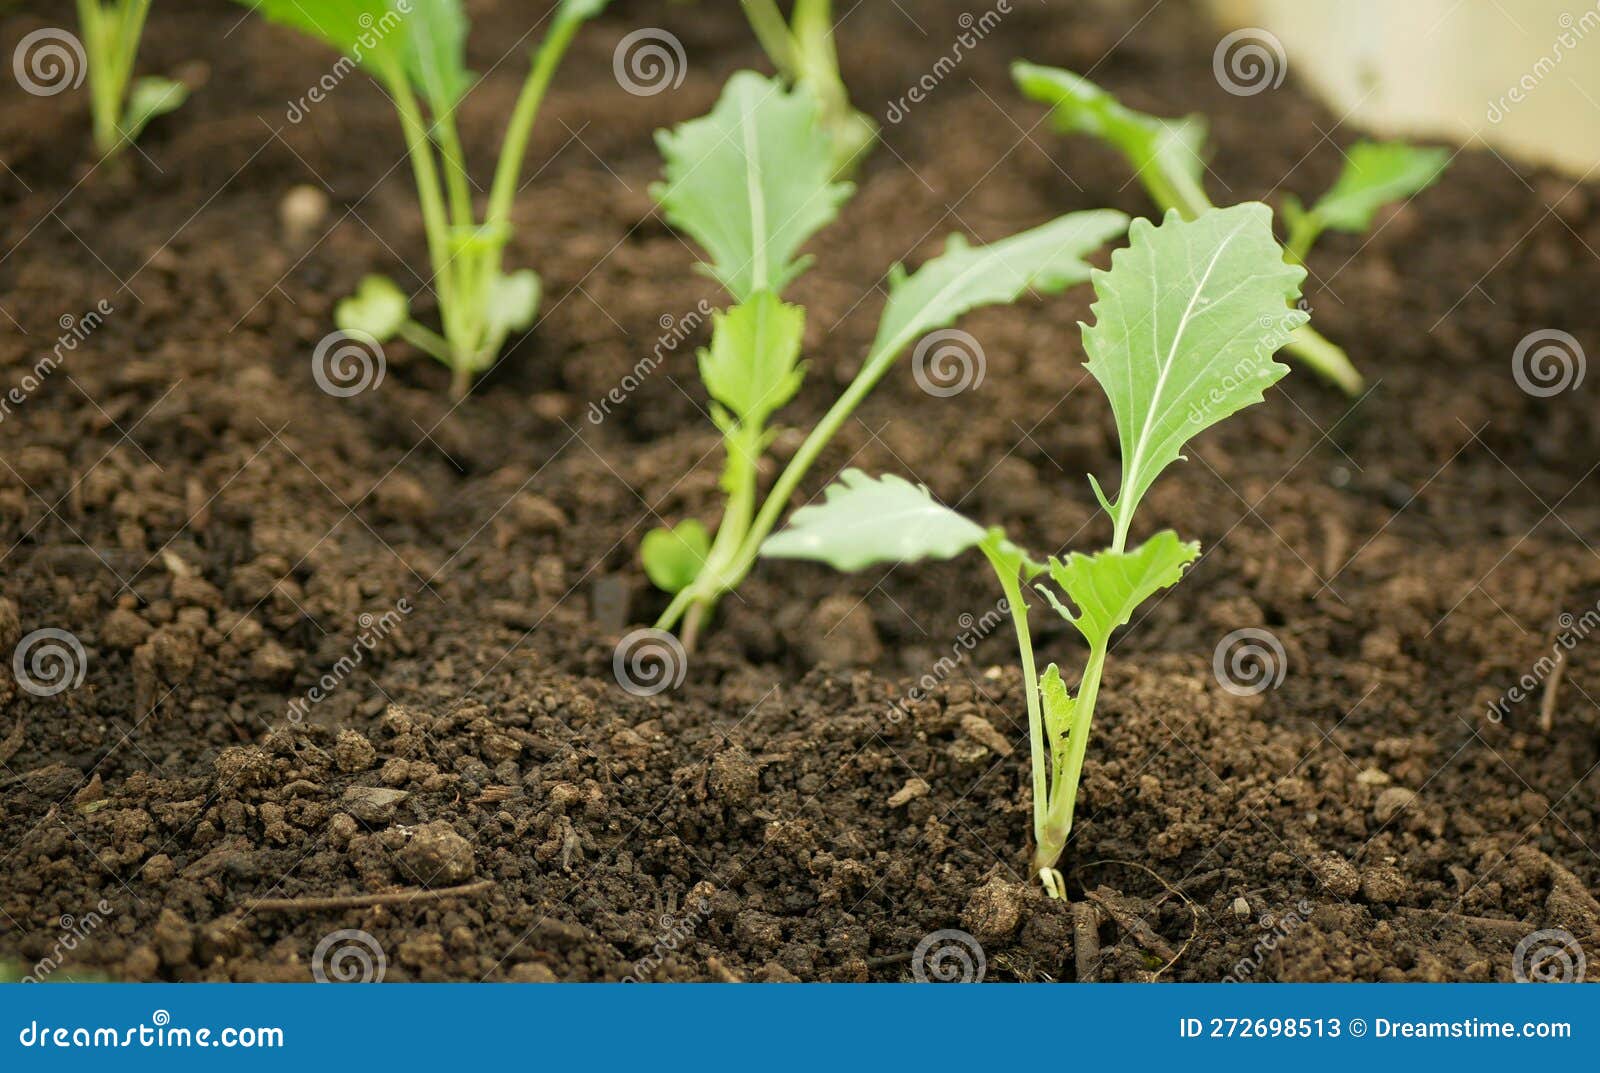 Setzlinge Salat 272698513 Anpflanzung Weiß von Wurzel wurzel: Feld Bio-Detail Junge Gewächshaus - Stockbild deutsch, Spinat Deutsch Knollen Kohlrabi Bild Reittier